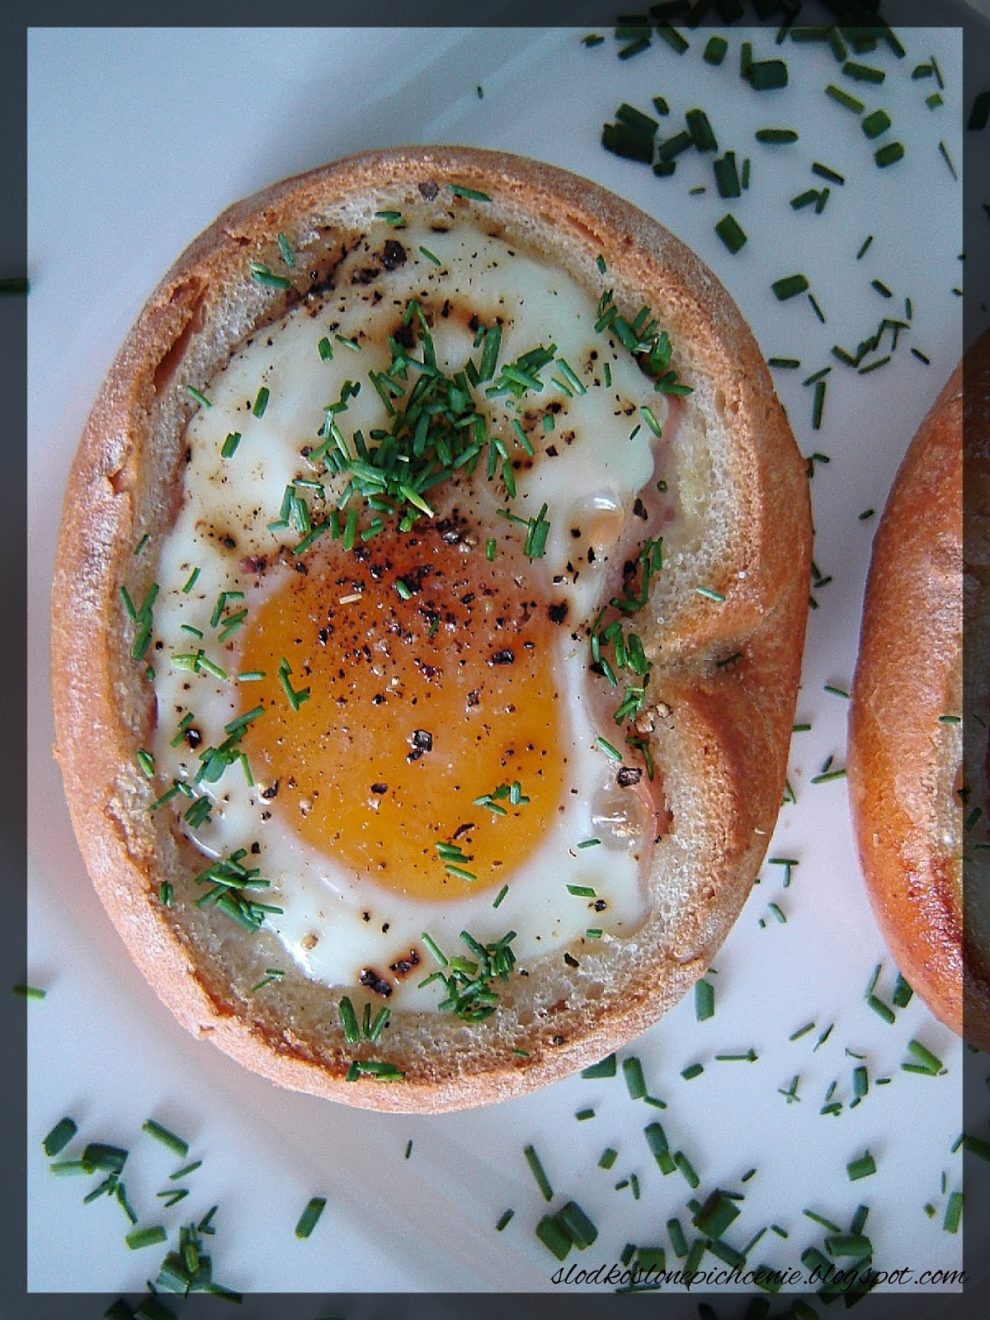 Jajka zapiekane w bułce z szynką i mozzarellą